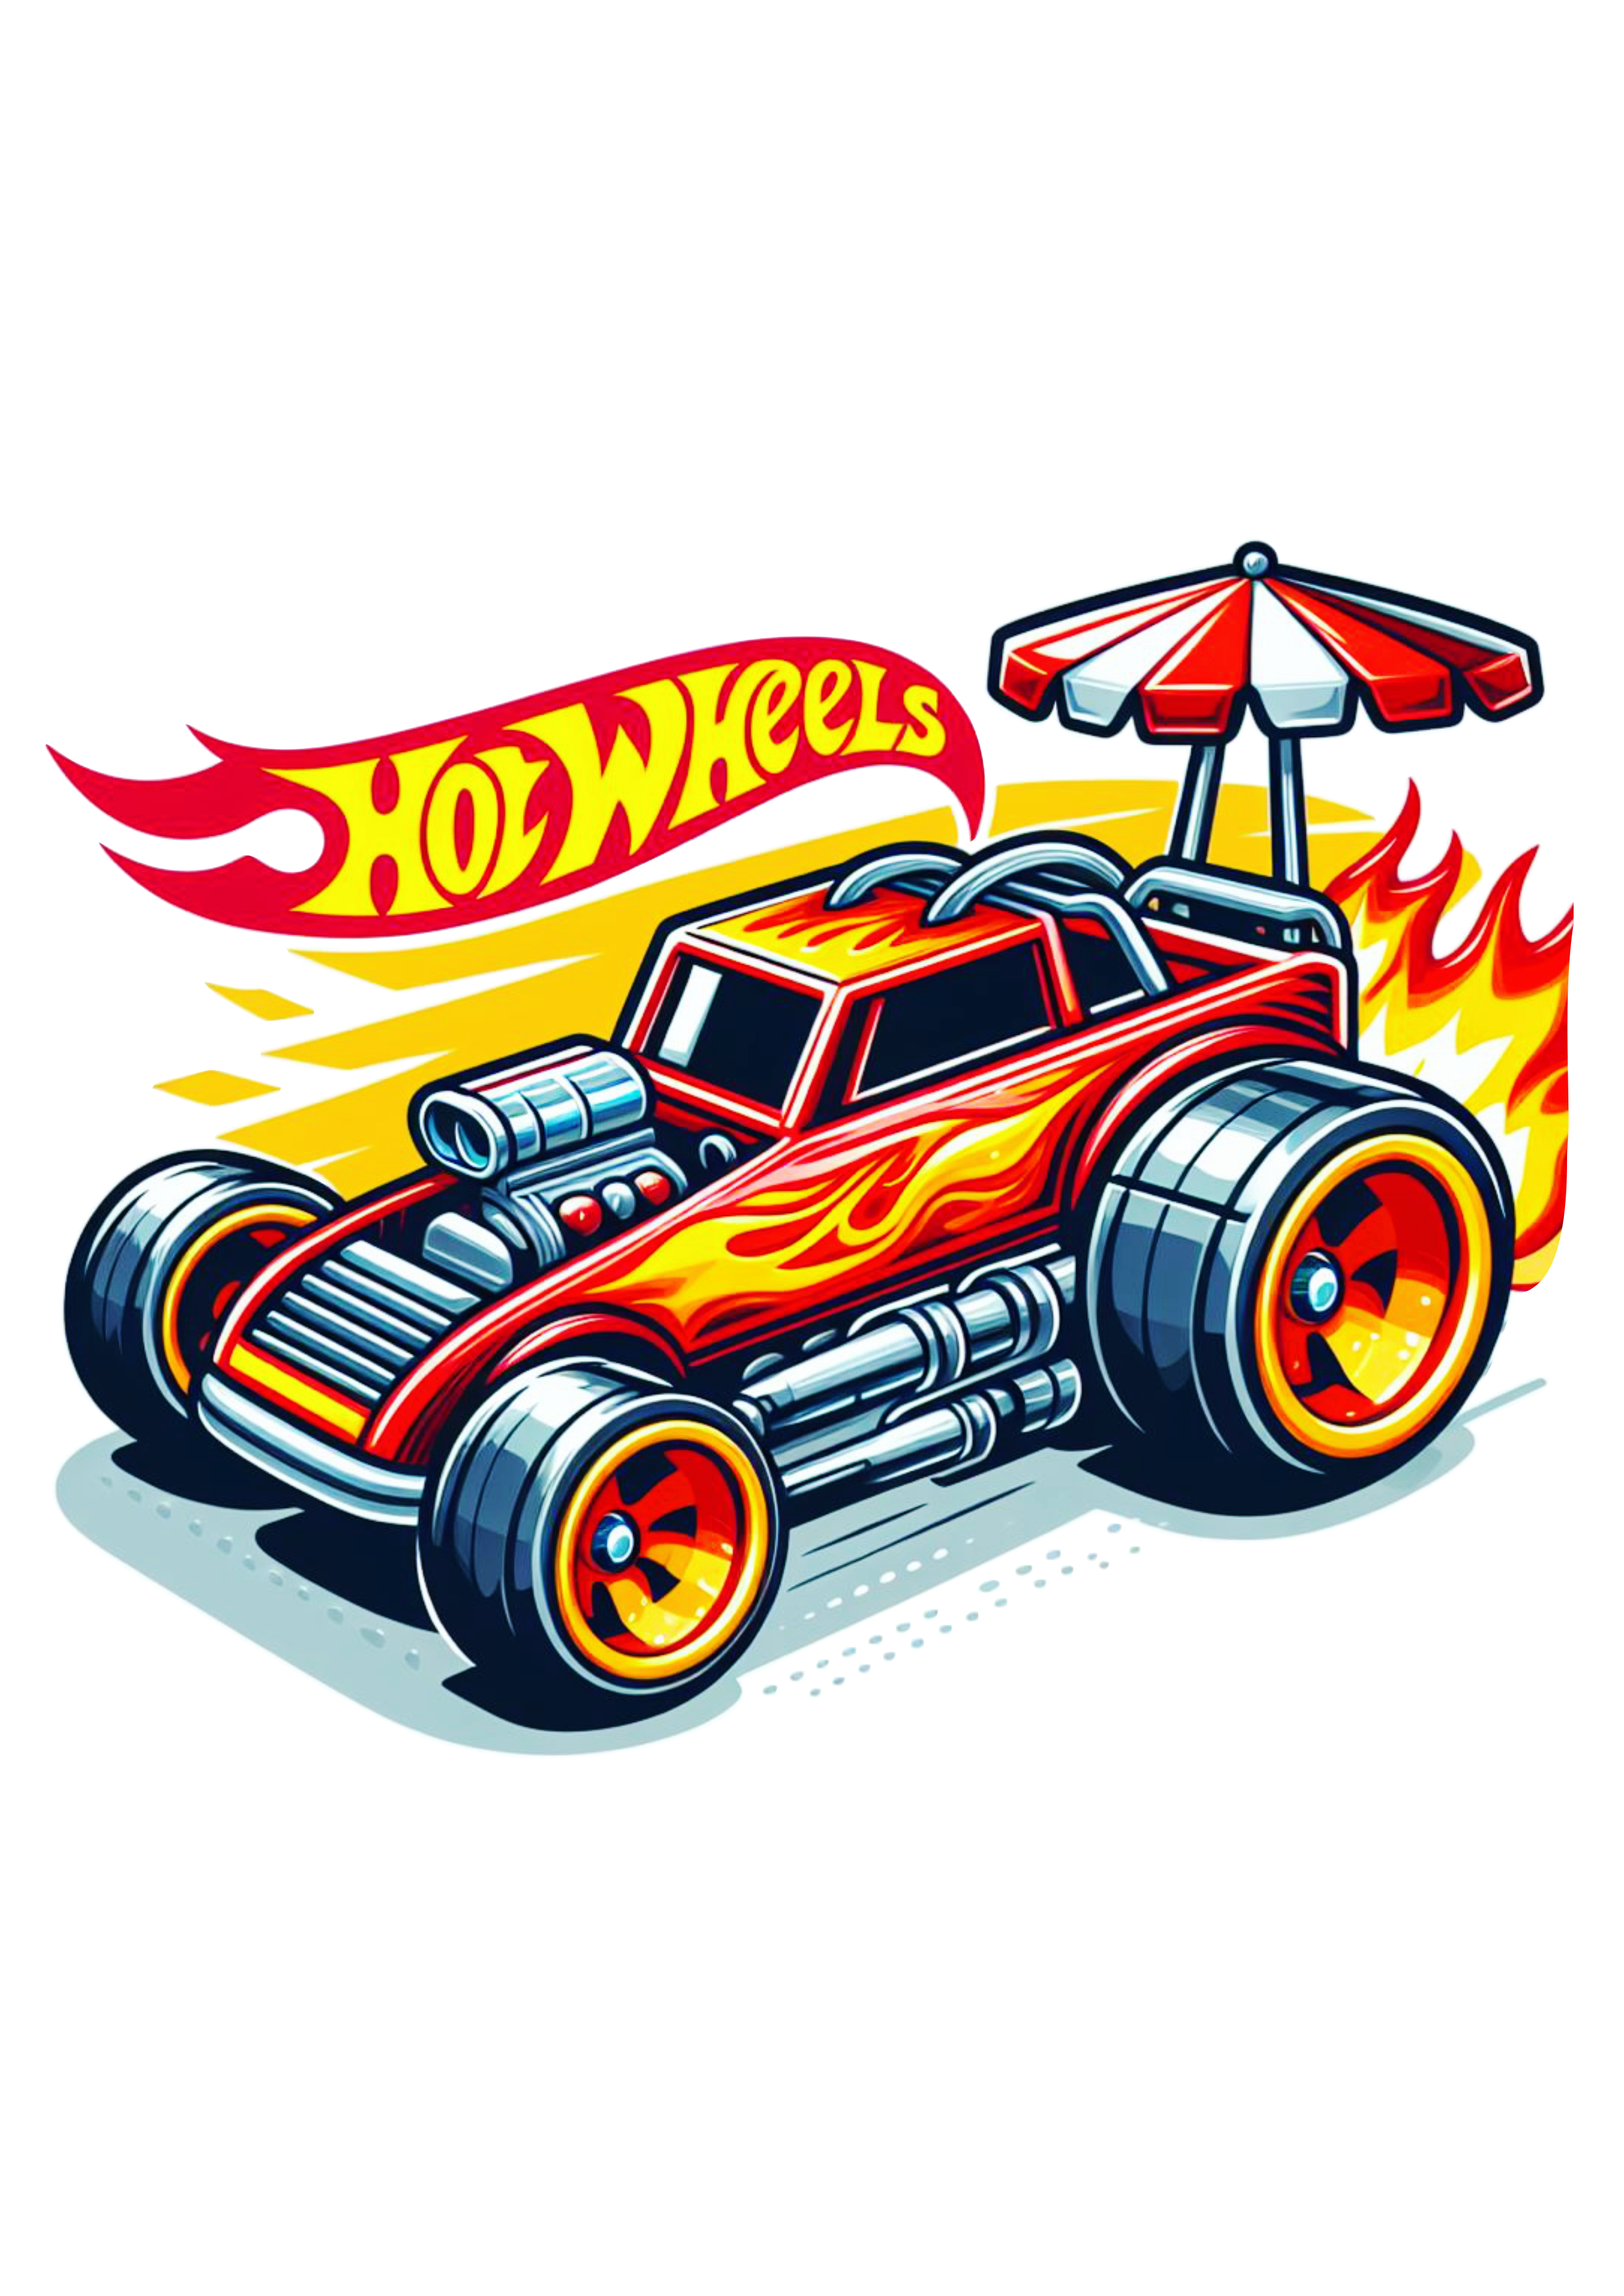 Hot Wheels carrinho de brinquedo desenho acelerando alta velocidade corrida imagens grátis fire png